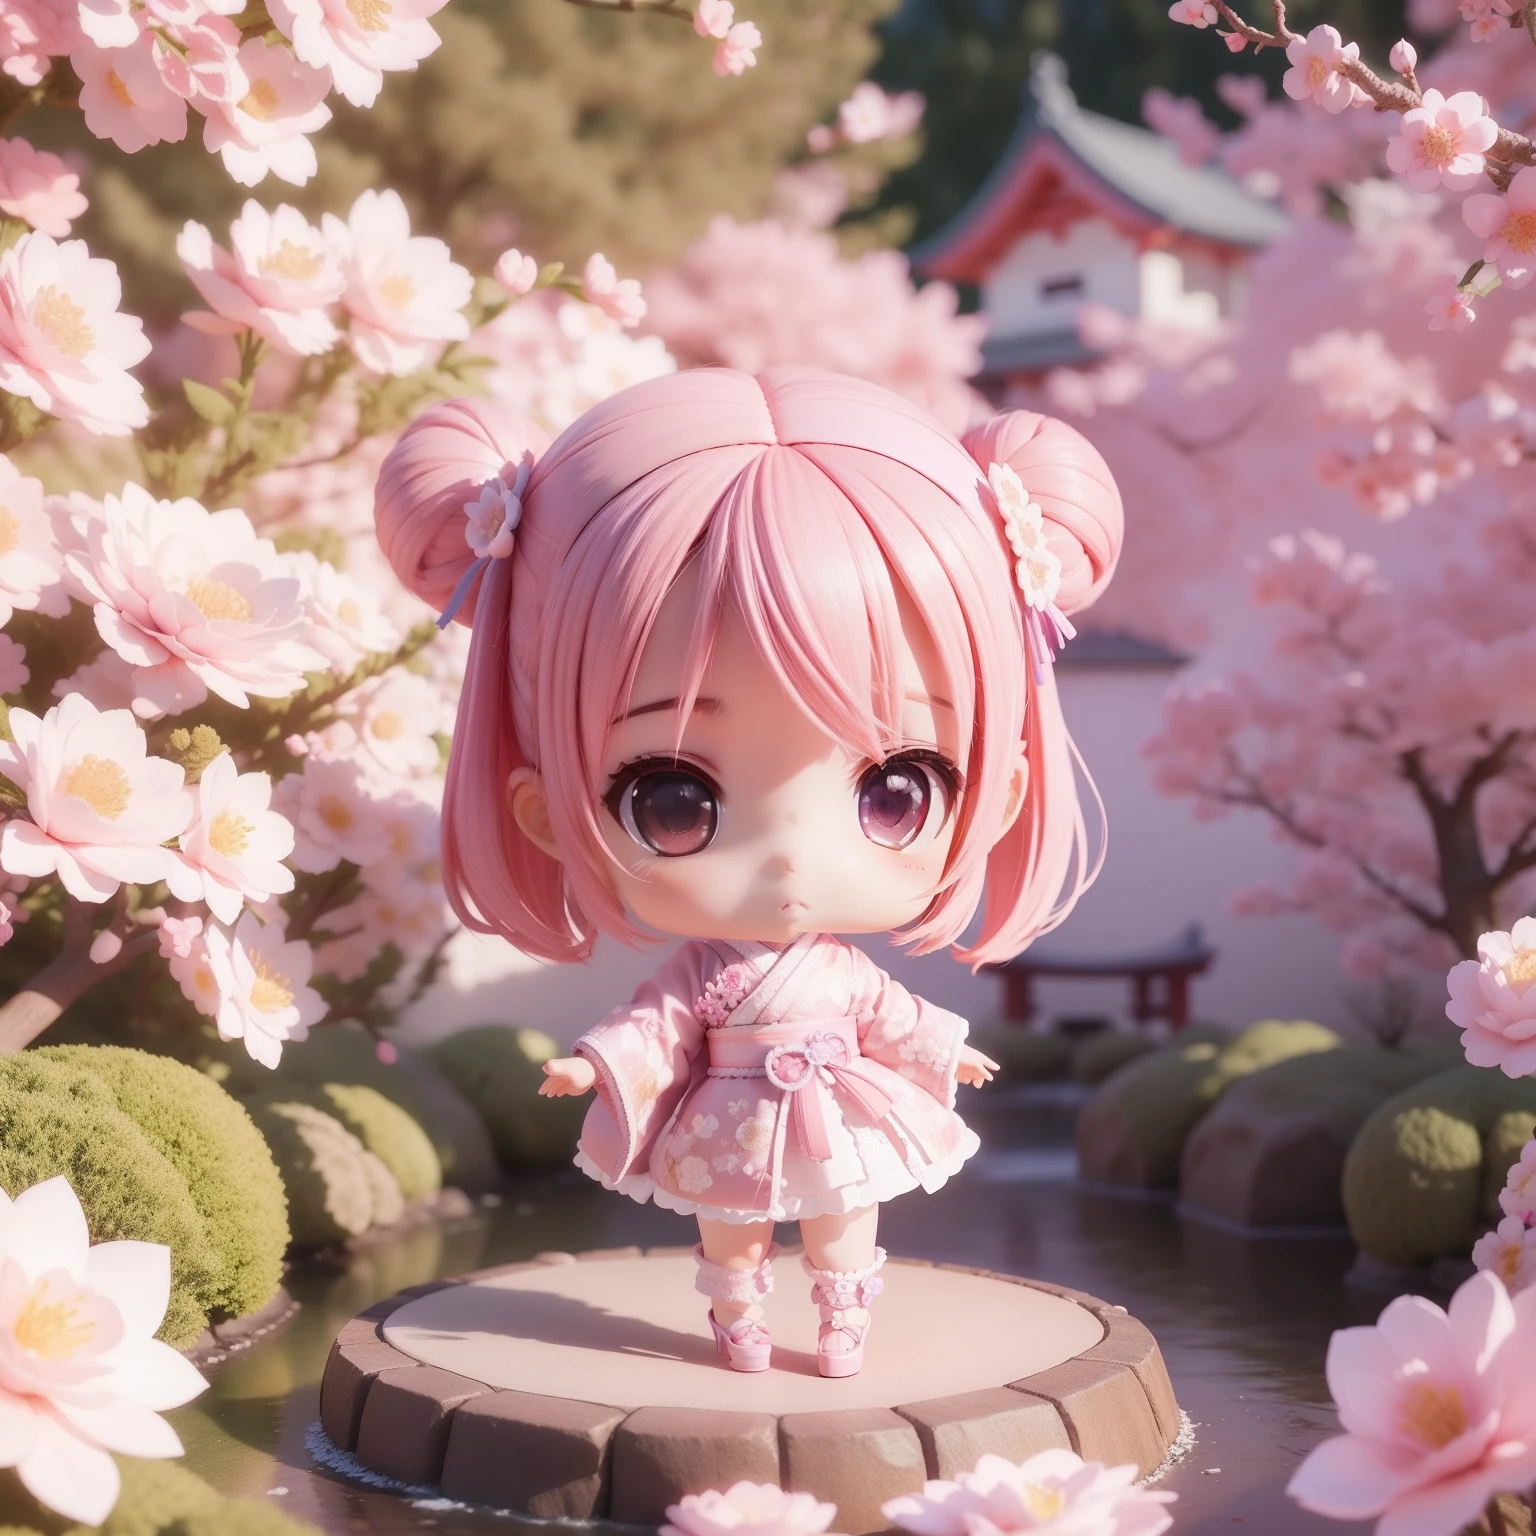 Bebê fofo Chibi Anime,(((Chibi Modelo 3D))) (melhor qualidade) (Preço Mestre)、Quimono rosa e roxo、Salto alto de renda branca com motivo floral de malha、Jardim japonês